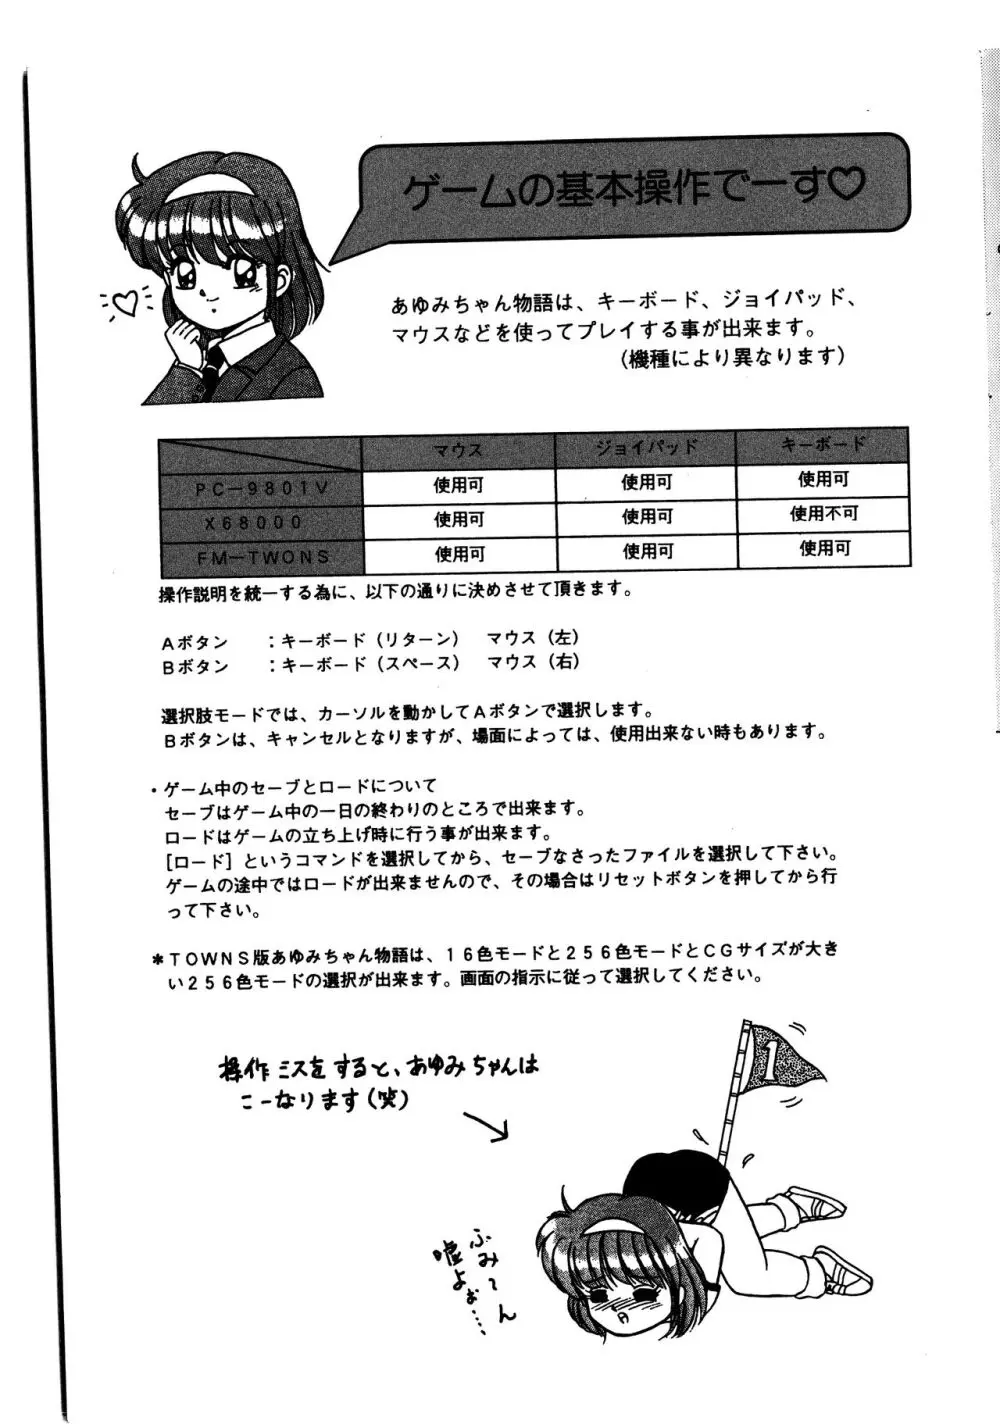 あゆみちゃん物語 マニュアル 4ページ